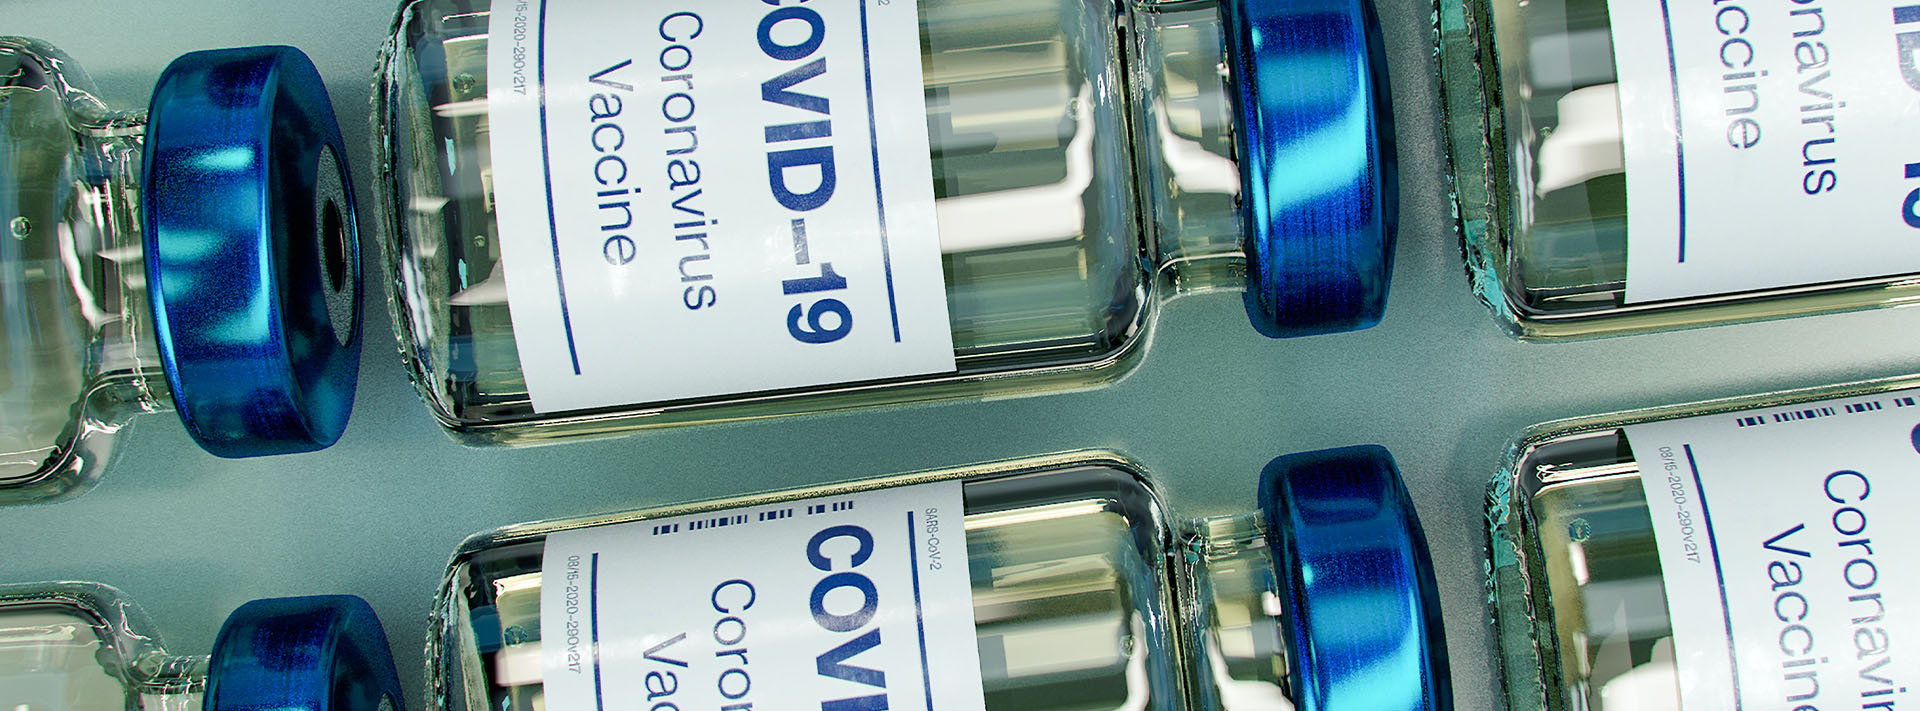 Proponen la Carpa de San Pedro Alcántara para la vacunación contra el COVID-19